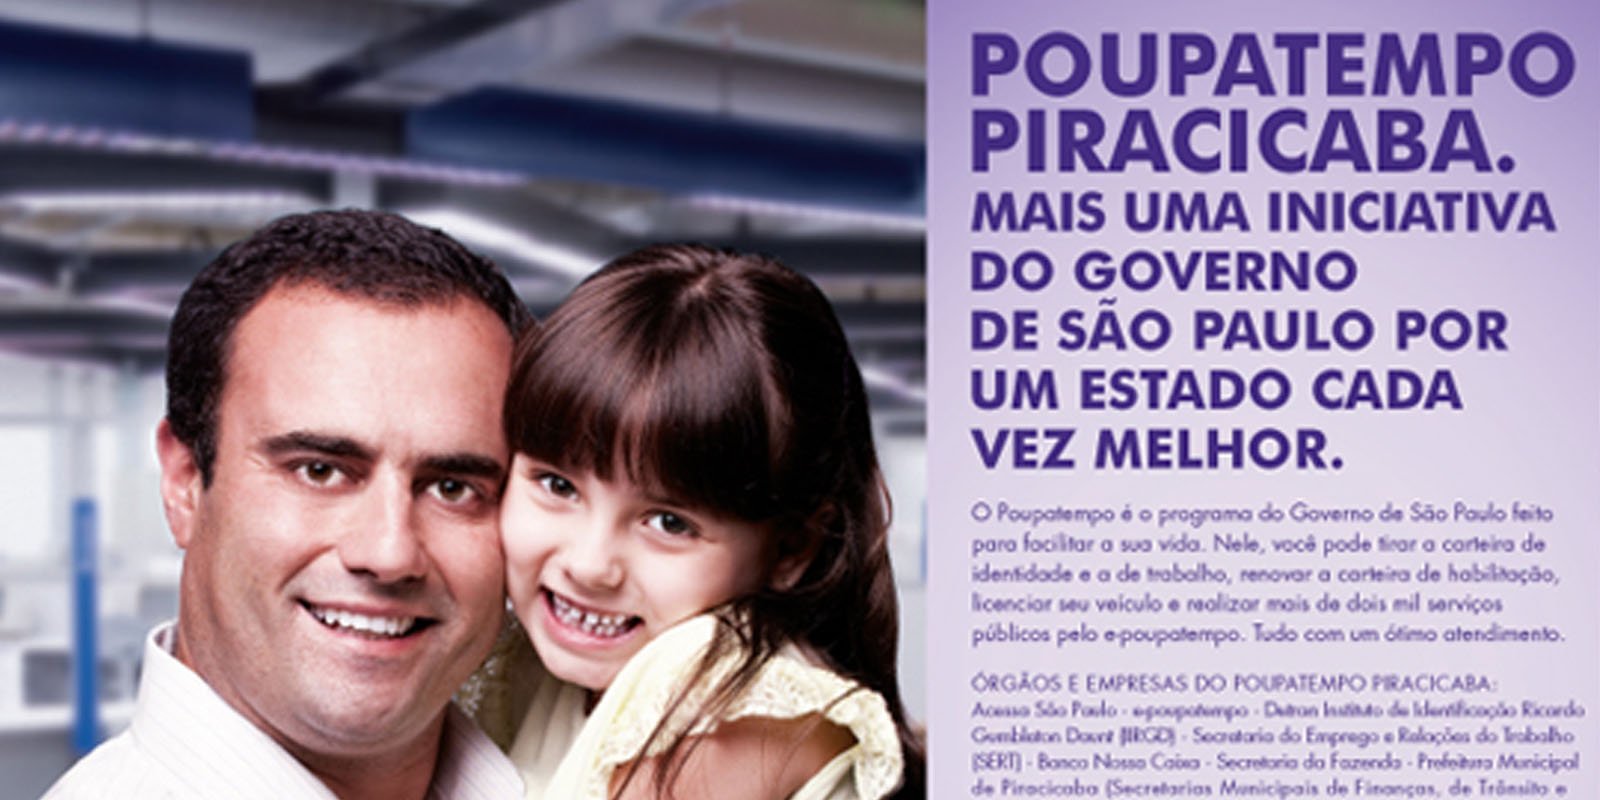 Featured image for “Inauguração Poupatempo”